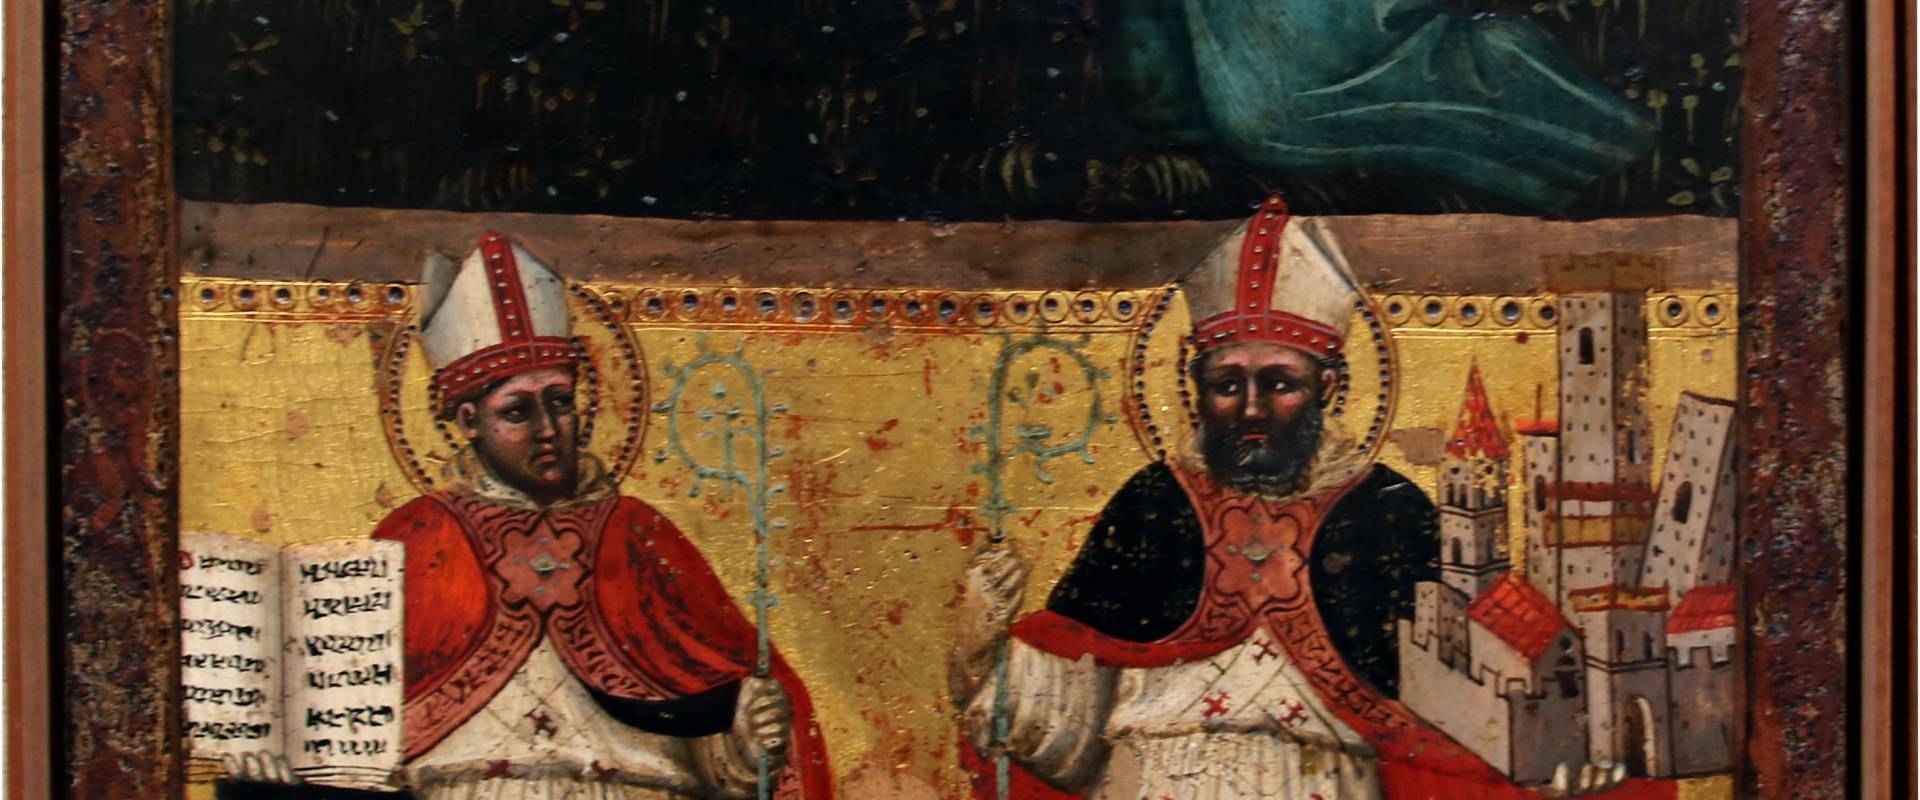 Lippo di Dalmasio, Orazione nell'orto. I santi Ambrogio e Petronio, 1380-1390 circa foto di Mongolo1984